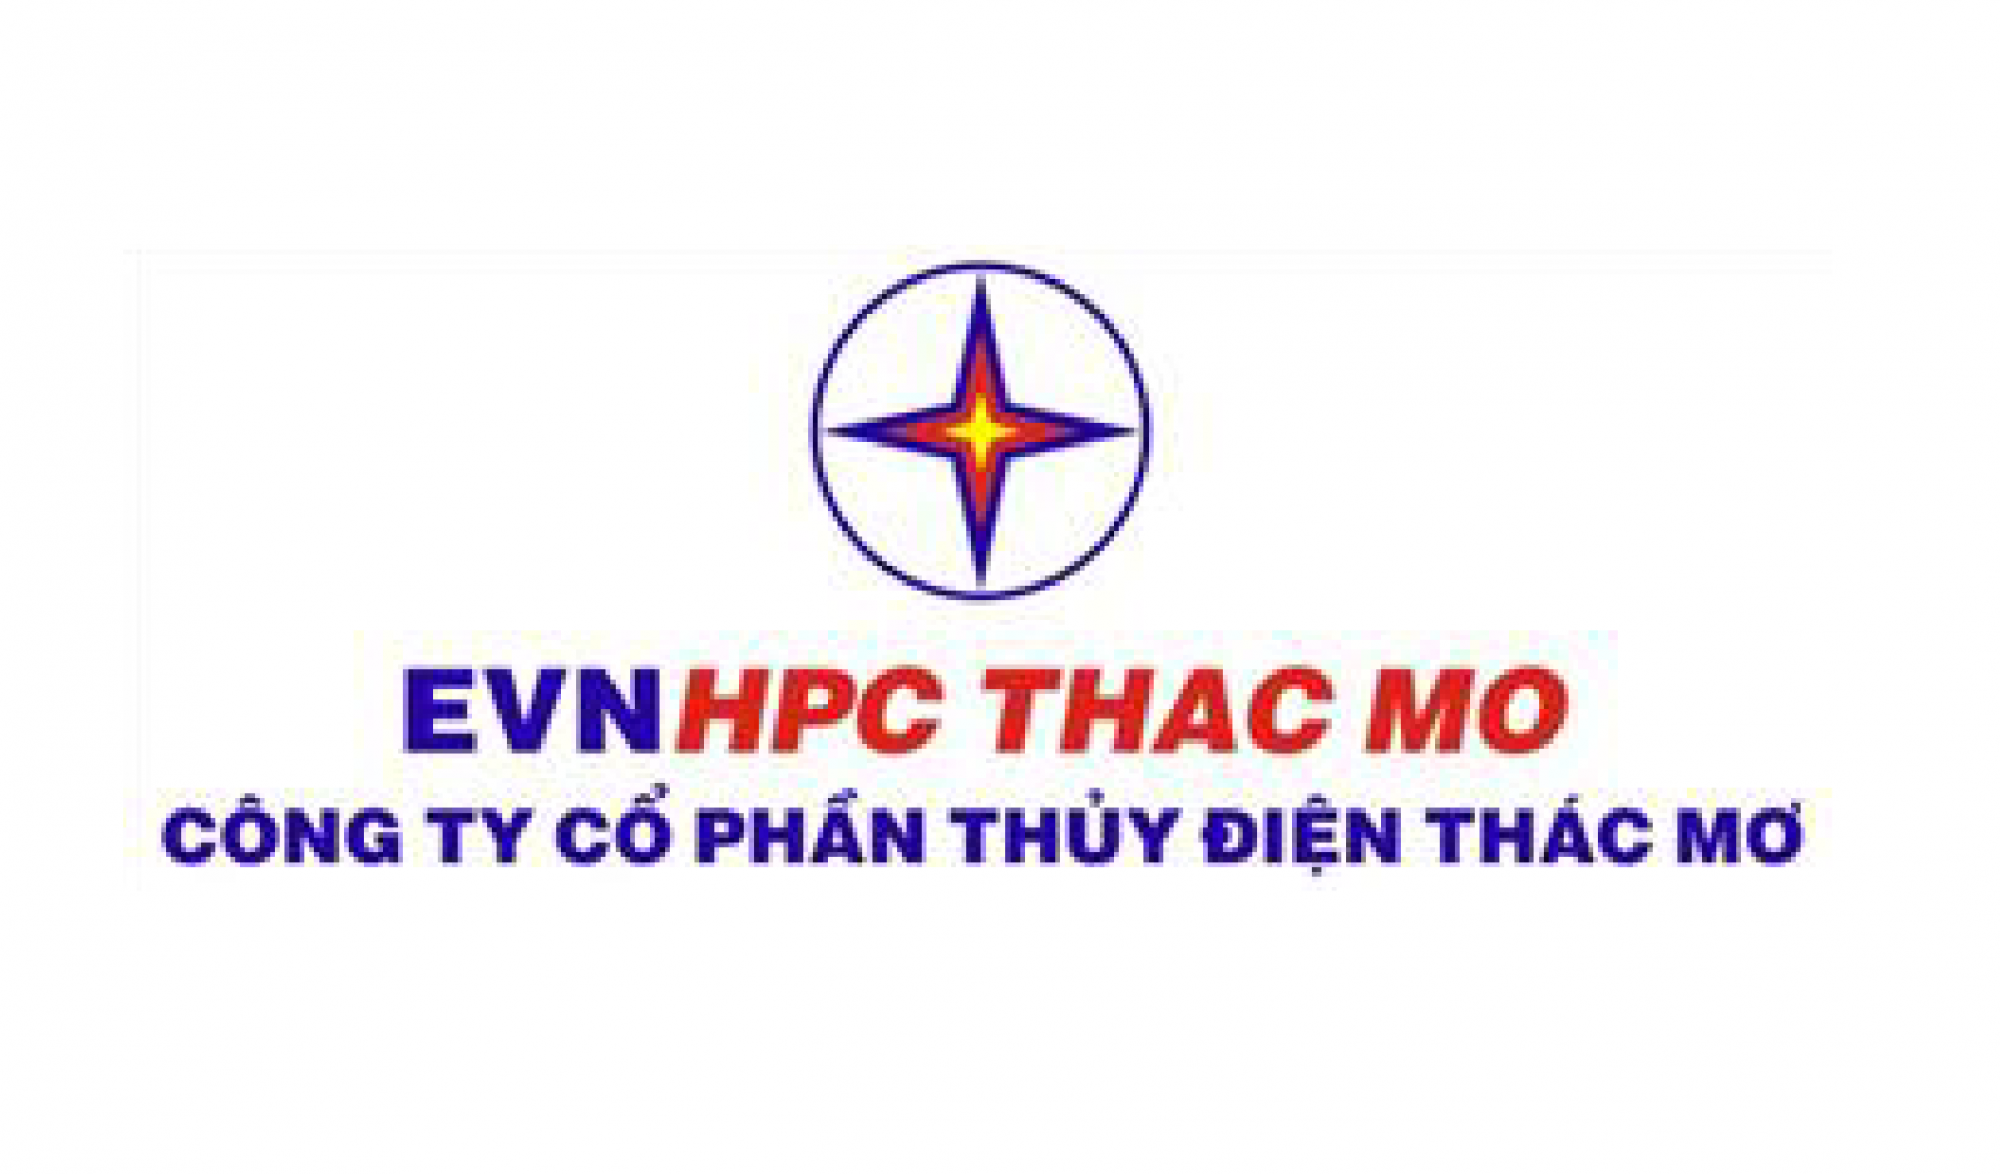 EVN HPC THAC MO